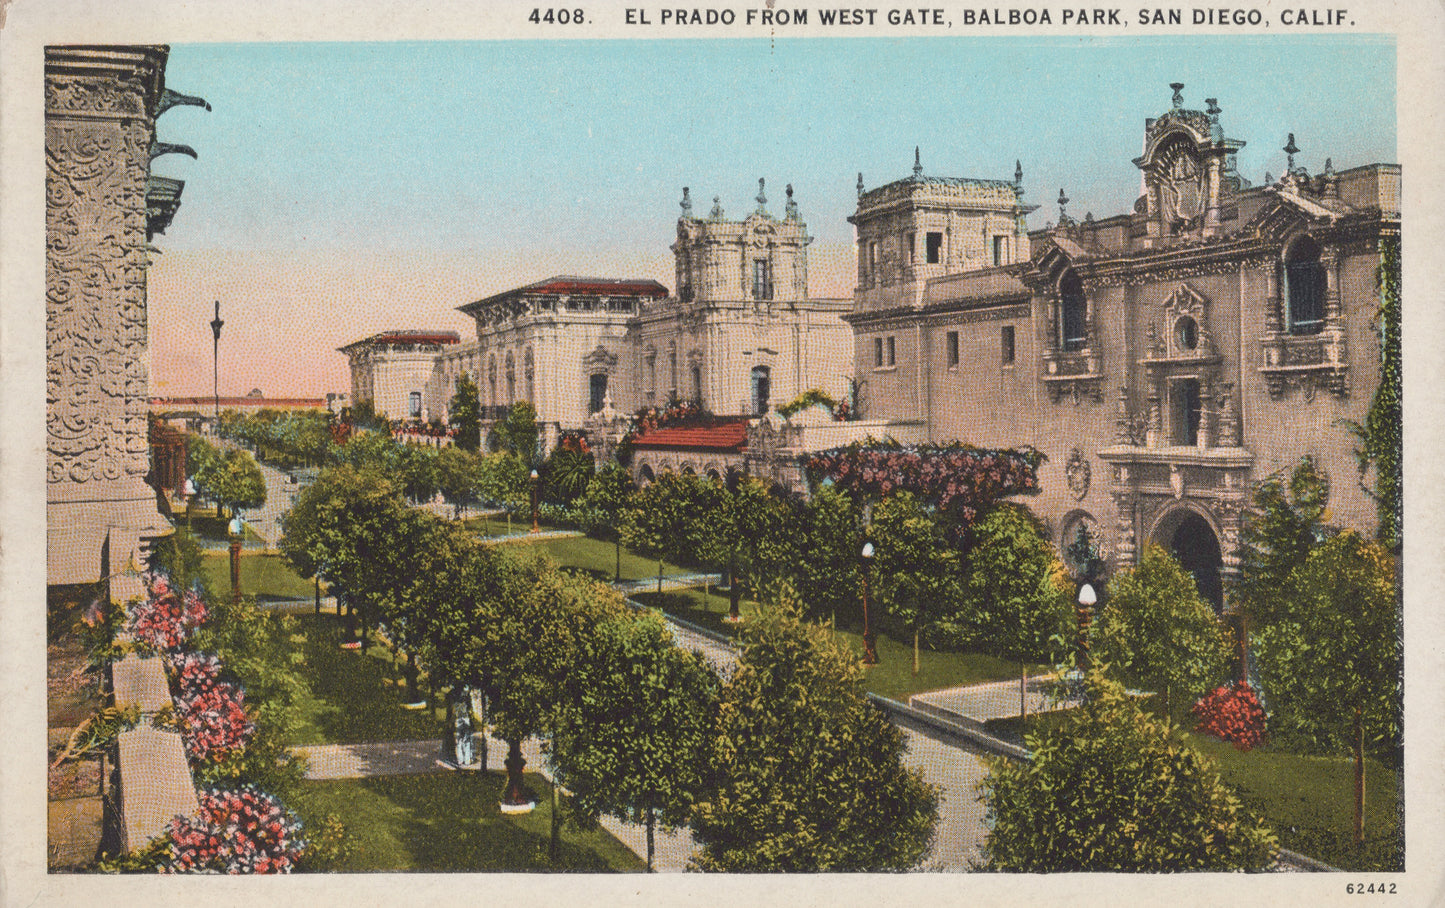 El Prado, Balboa Park, San Diego